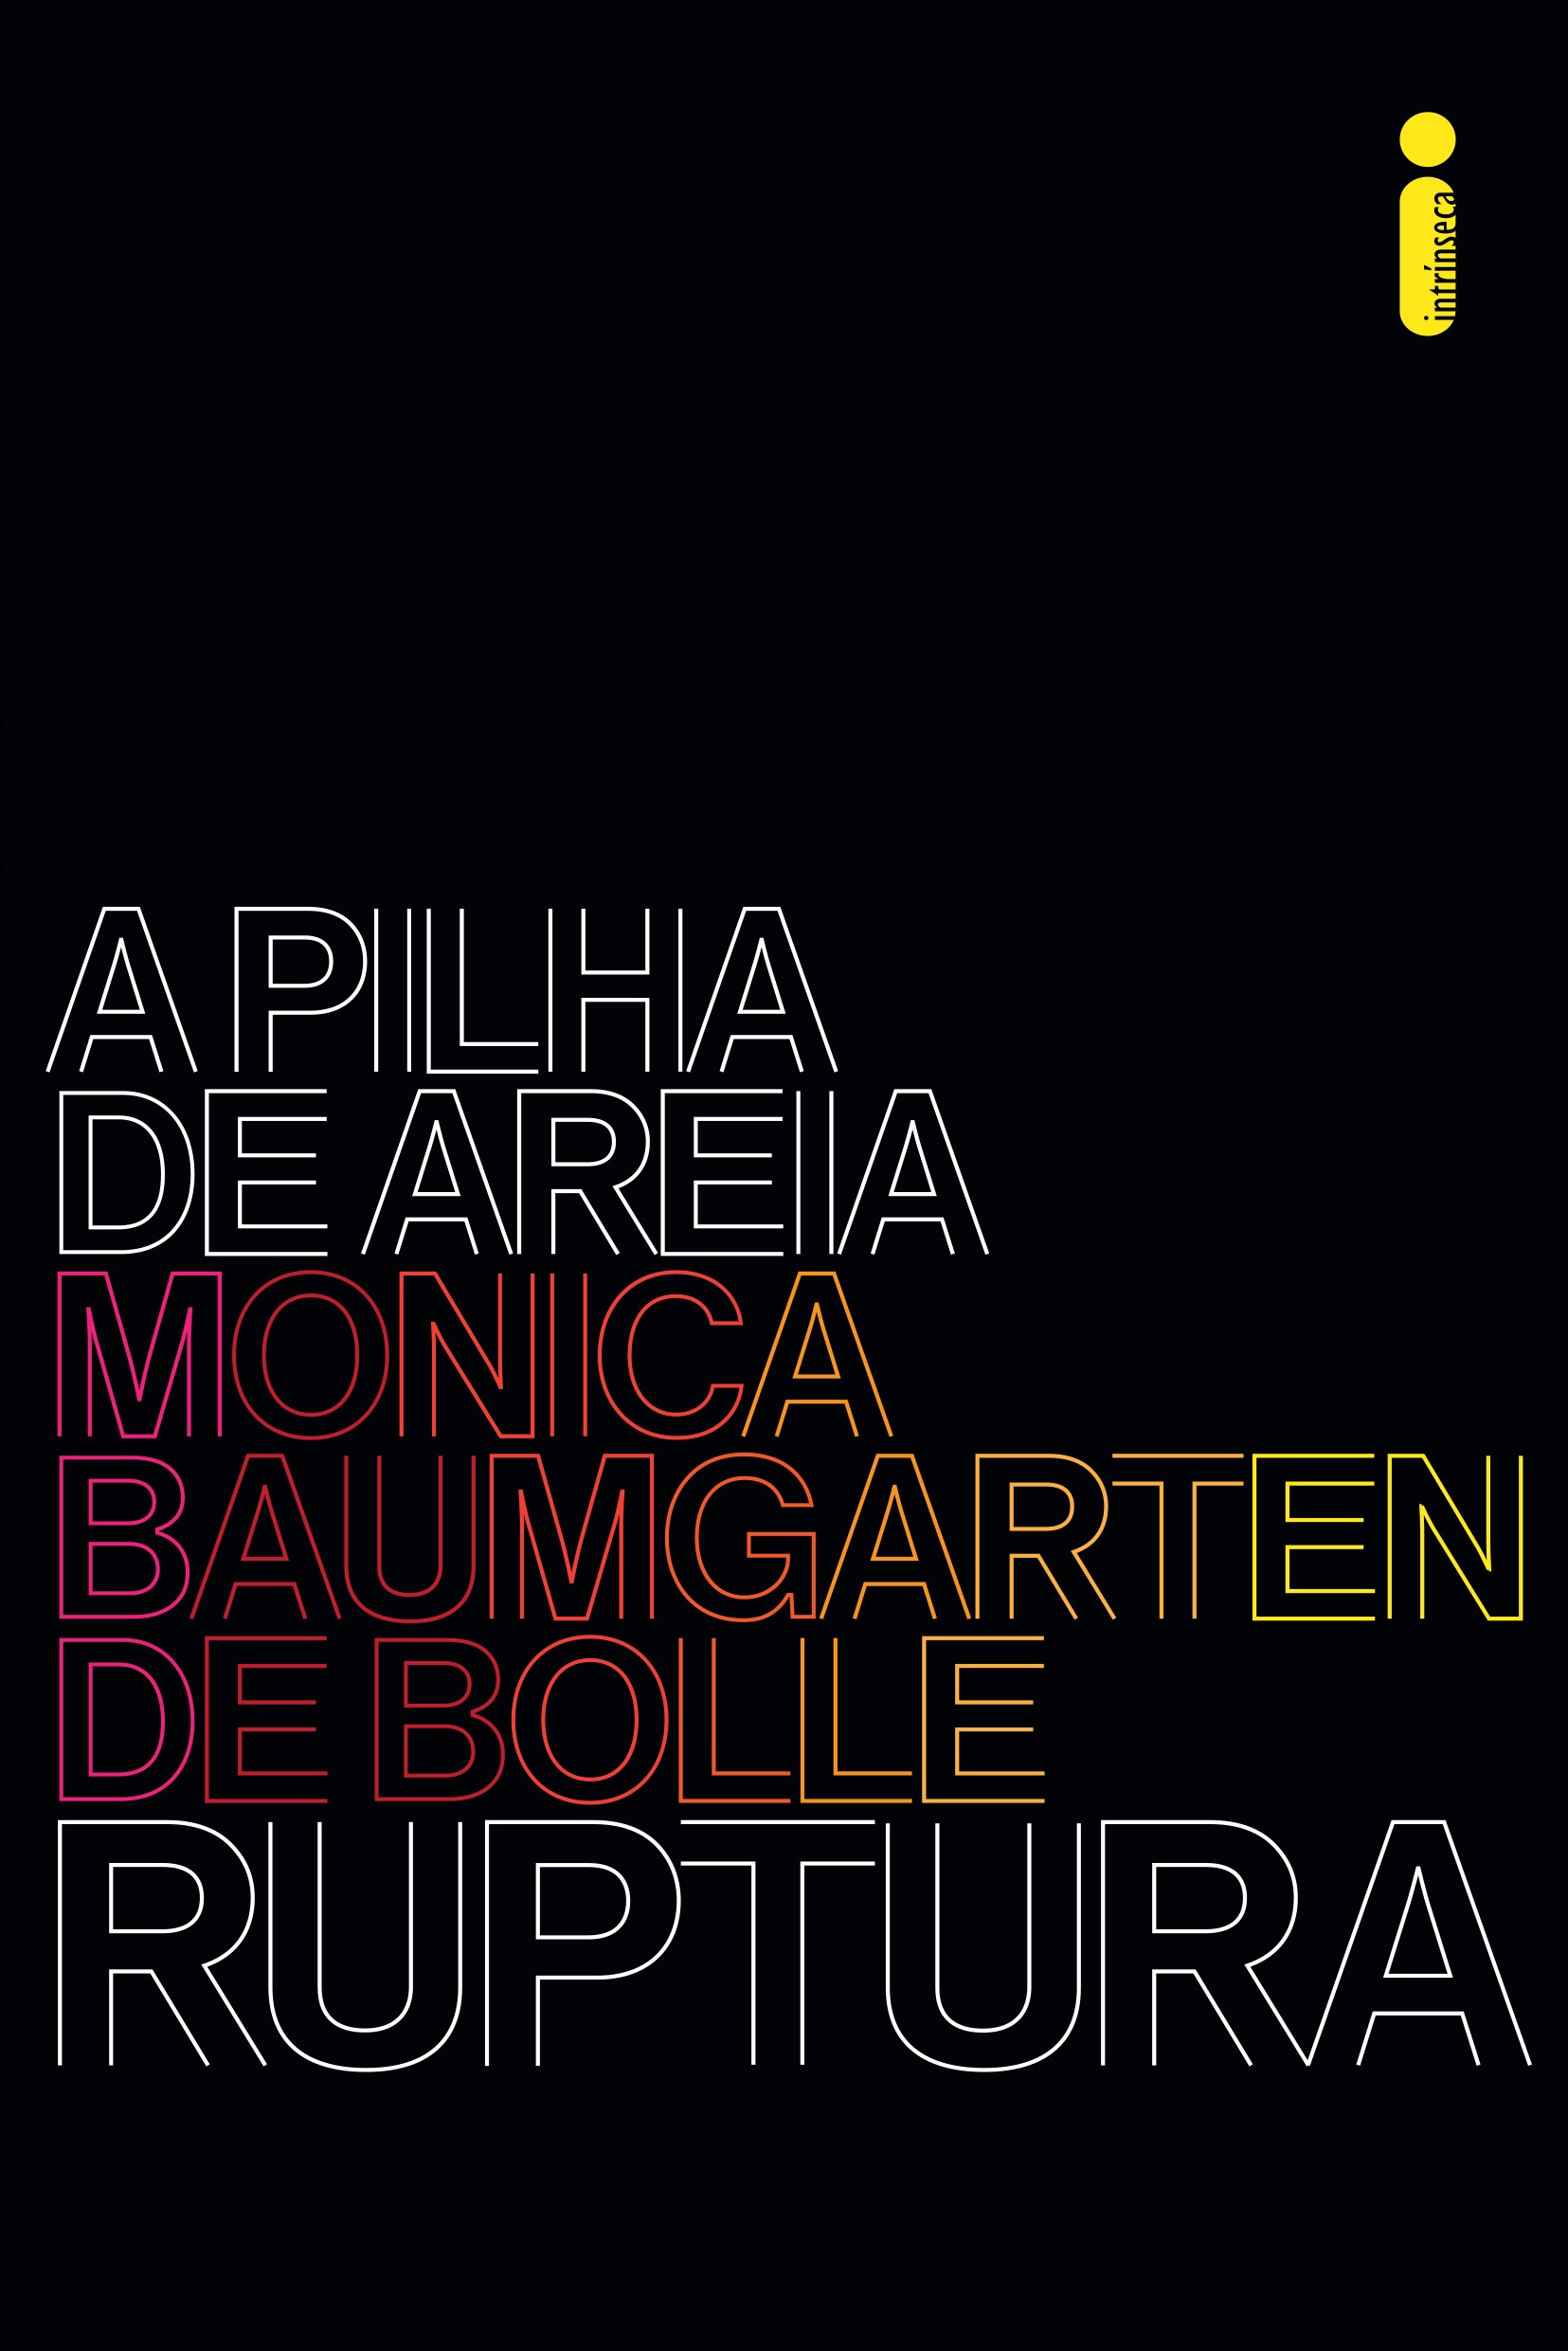 Ruptura é o primeiro volume da série Pilha de Areia, de Monica de Bolle, publicada pela Editora Intrínseca (Foto: Divulgação)